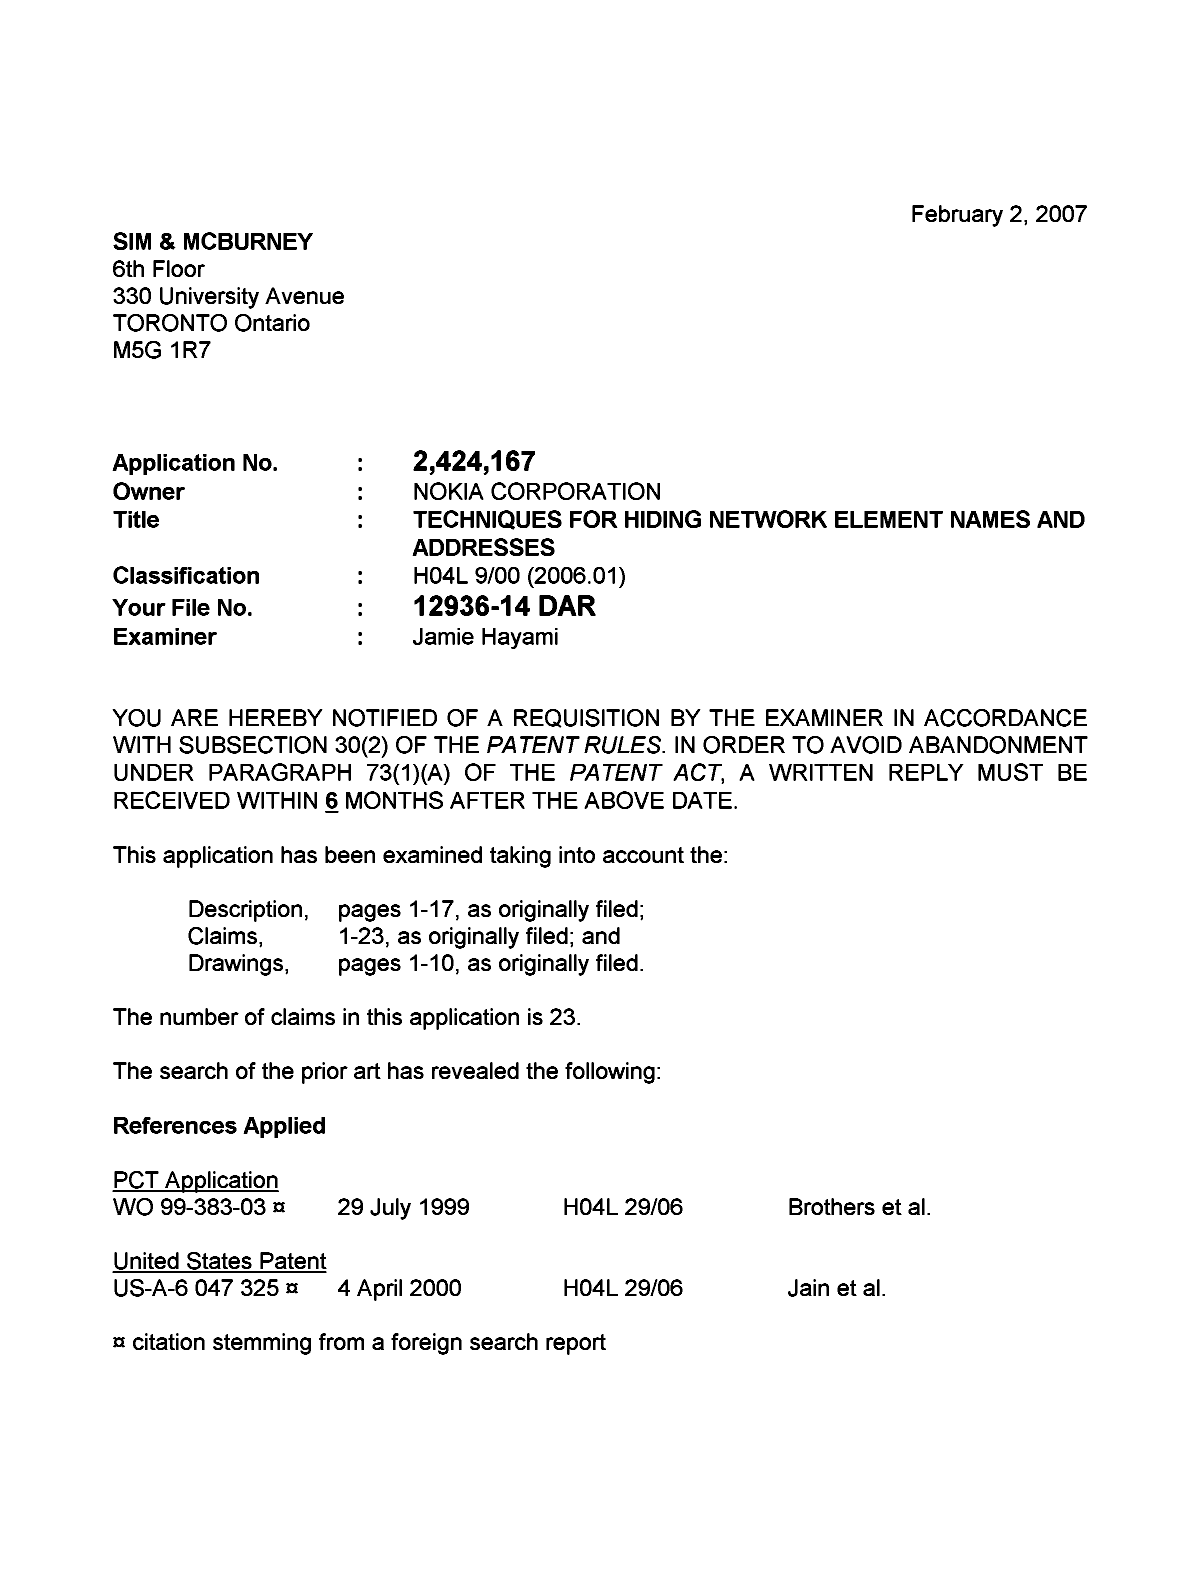 Document de brevet canadien 2424167. Poursuite-Amendment 20070202. Image 1 de 3